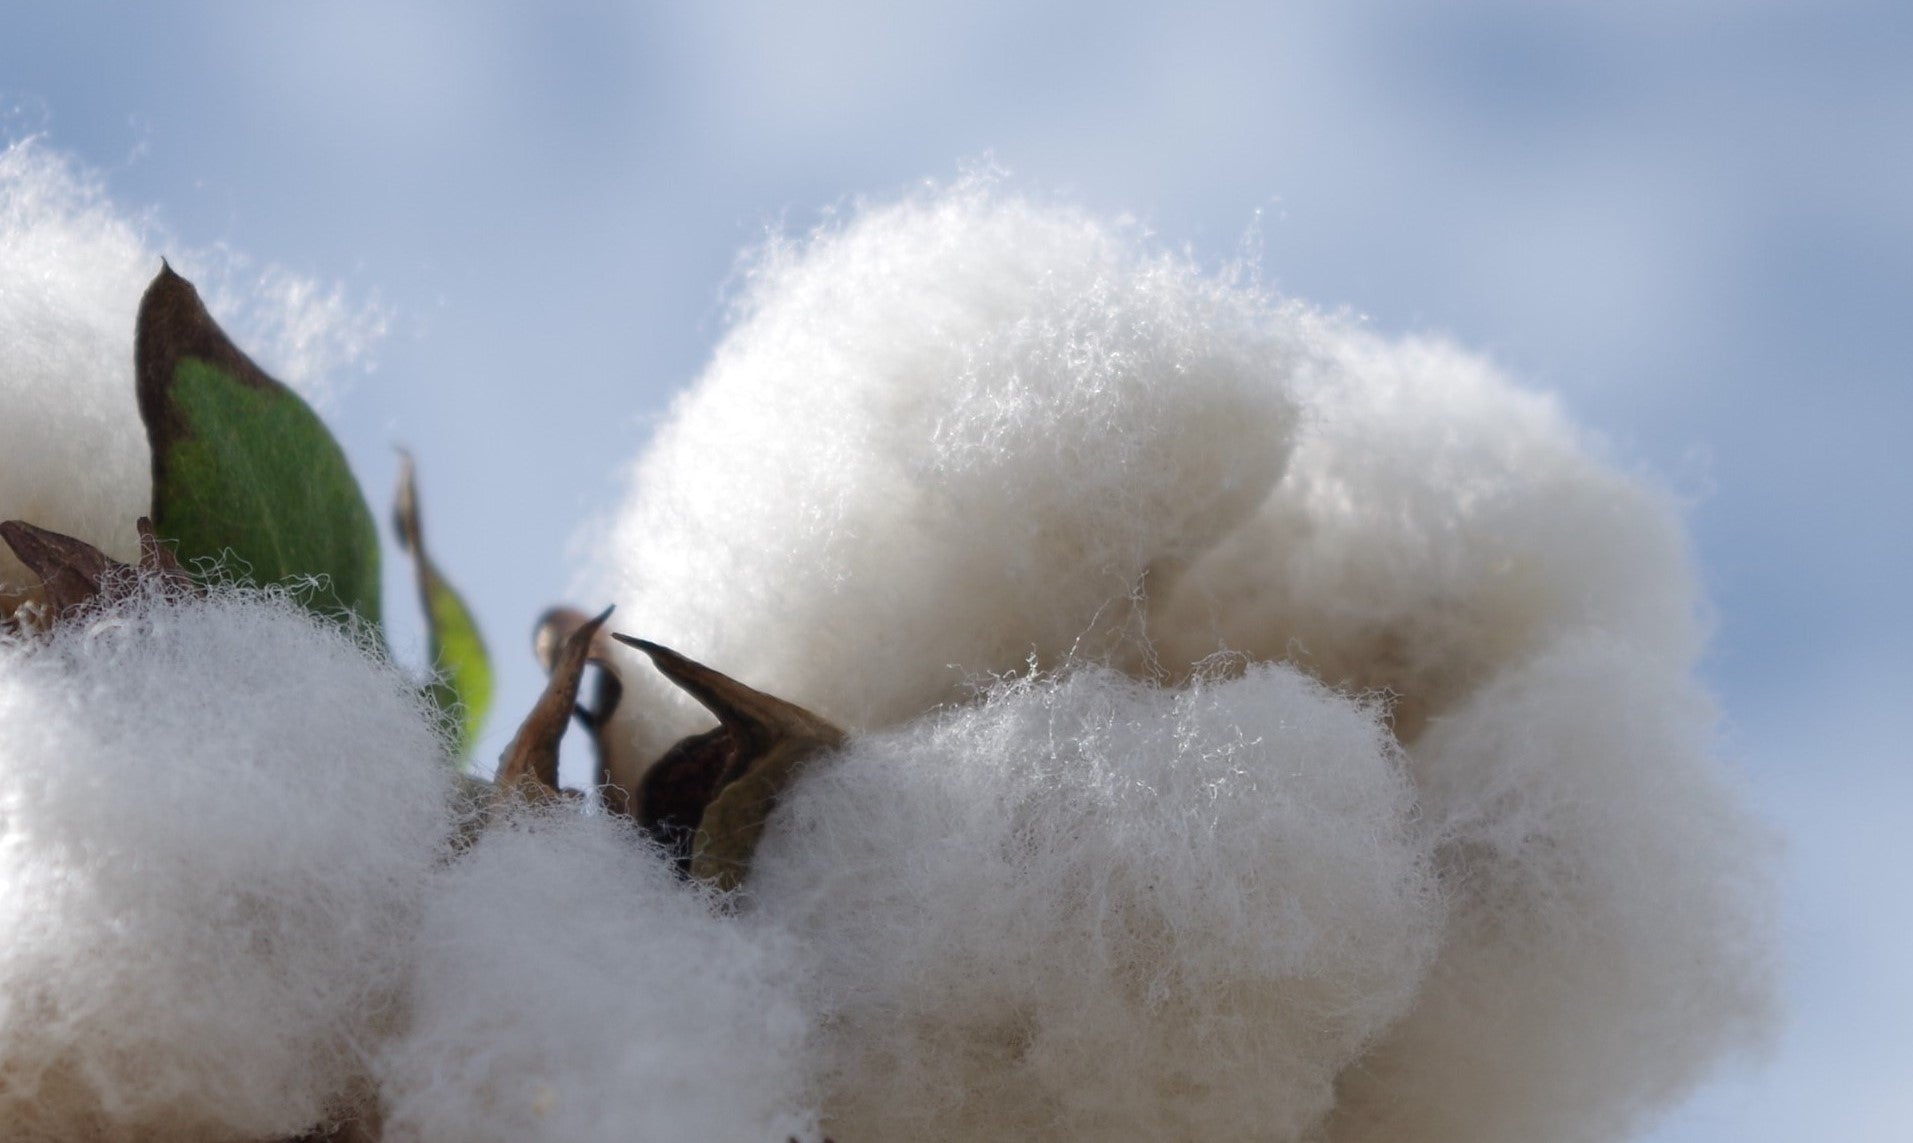 ふわふわとした触り心地、綿の優しい香り、それが和綿の特徴です。弊社では、オーガニックコットンを国内で栽培し、徹底的に無農薬で育てています。私たちは環境にやさしい栽培方法を採用し、土壌や水源を守りながら、豊かな自然の力だけで和綿を作り上げています。身につける方々に安心と快適さを提供するために、品質にこだわり繊細な糸を丹念に紡ぎ上げています。ぜひ、和綿の魅力をご体感ください。わたから わたからつむぐ マインド松井 日本の綿 わた 和綿 綿 和綿とは コットン コットンとは コットン１００％ オーガニックコットン 日用品 商品 無農薬 わめん 育て方 種類 洋綿 綿花 エコ エシカル エシカル商品 サスティナブル 糸紡ぎ 収穫 特徴 綿摘み 種 販売 豊か 暮らし 豊かな暮らし 生活 ガラ紡 コットン 生地 おすすめ 収穫 国産和綿 国産の綿 国産 生産地 自社畑 生地 岐阜 熊本 綿 わた コットン オーガニックコットン 綿１００％　コットン１００％　オーガニックコットン１００％